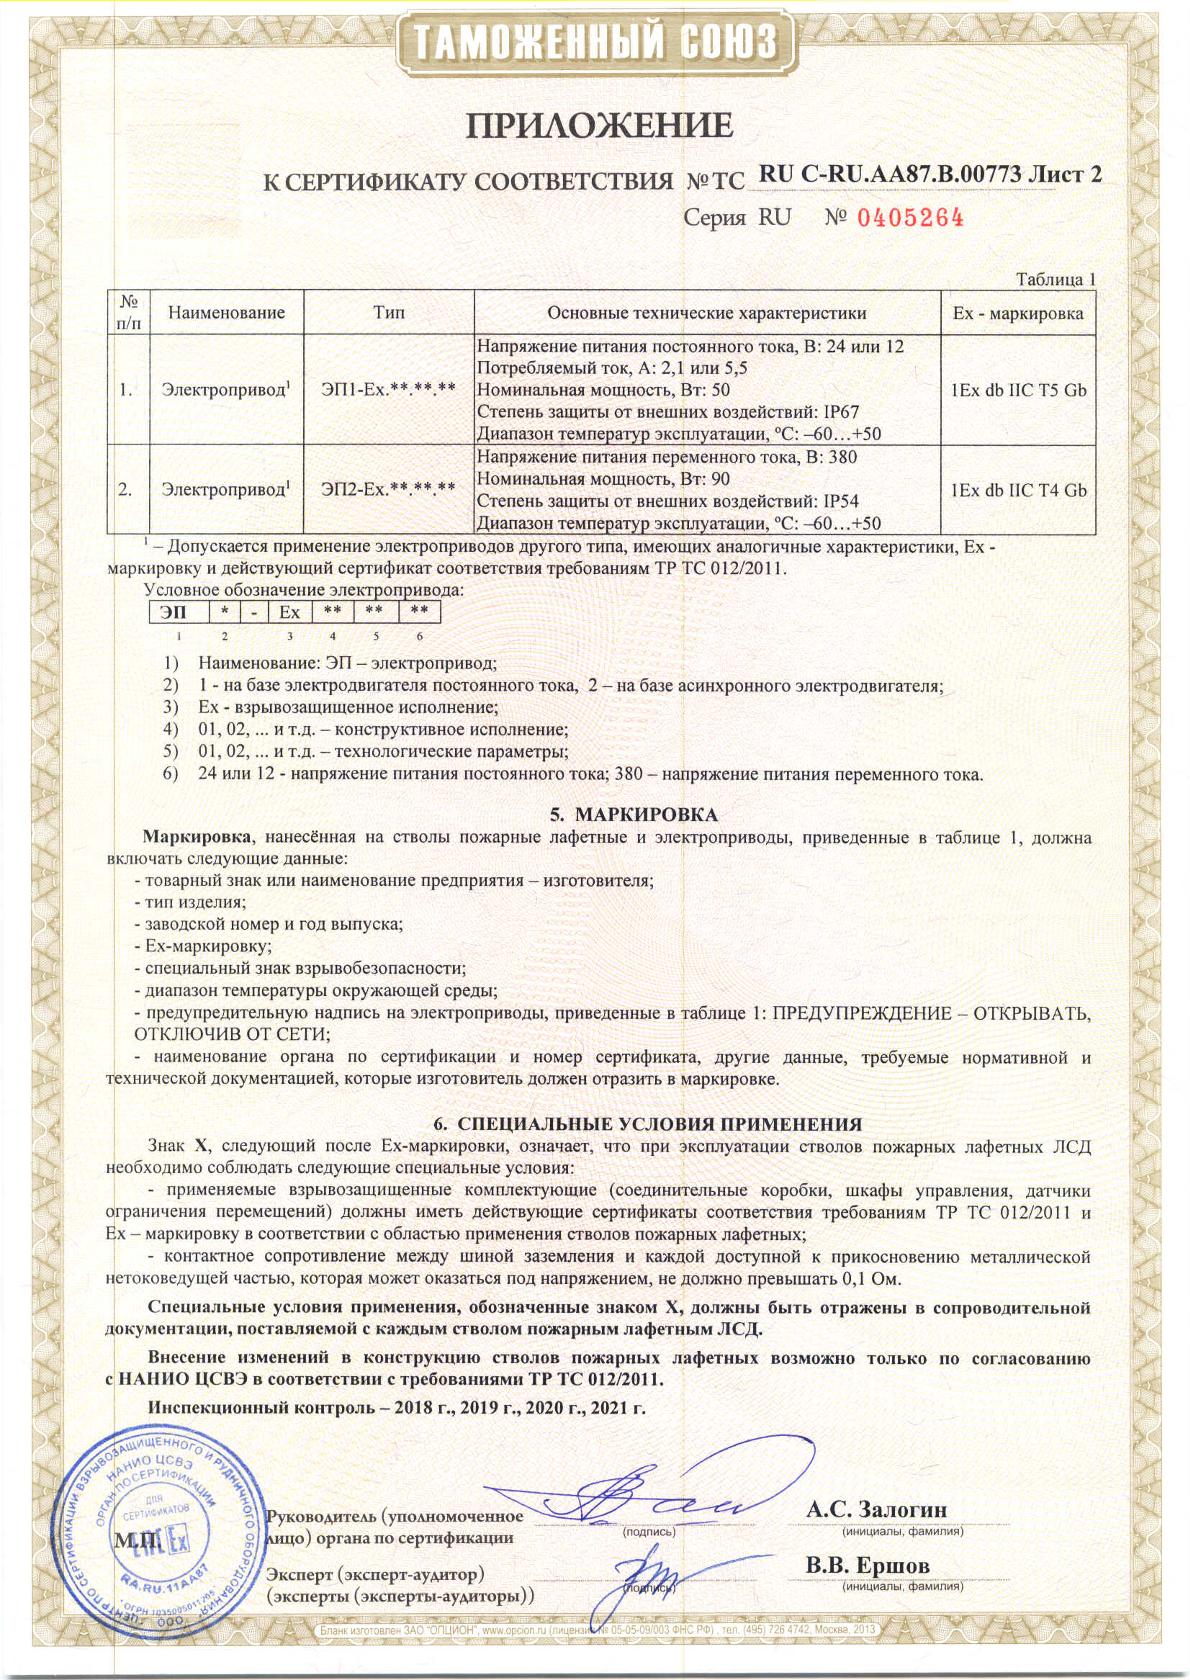 Сертификат соответствия стволы пожарные лафетные ЛС, ЛСД приложение лист 2